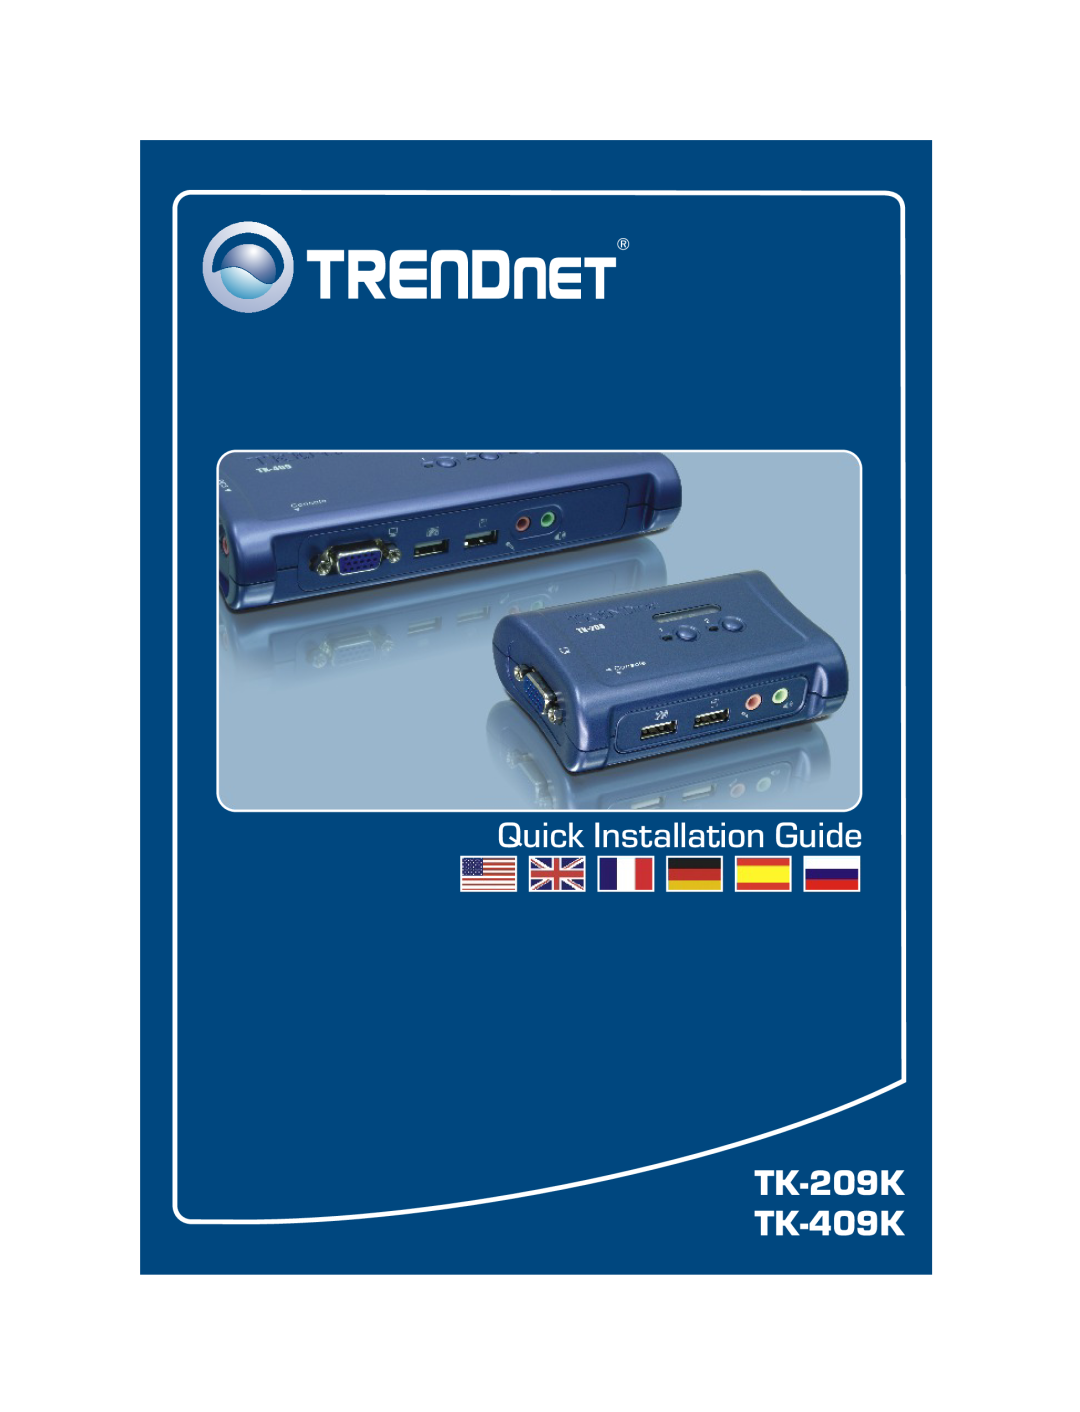 TRENDnet tk-409k, tk-209k, TK-209K, TK-409K manual Quick Installation Guide, TK-209K TK-409K 